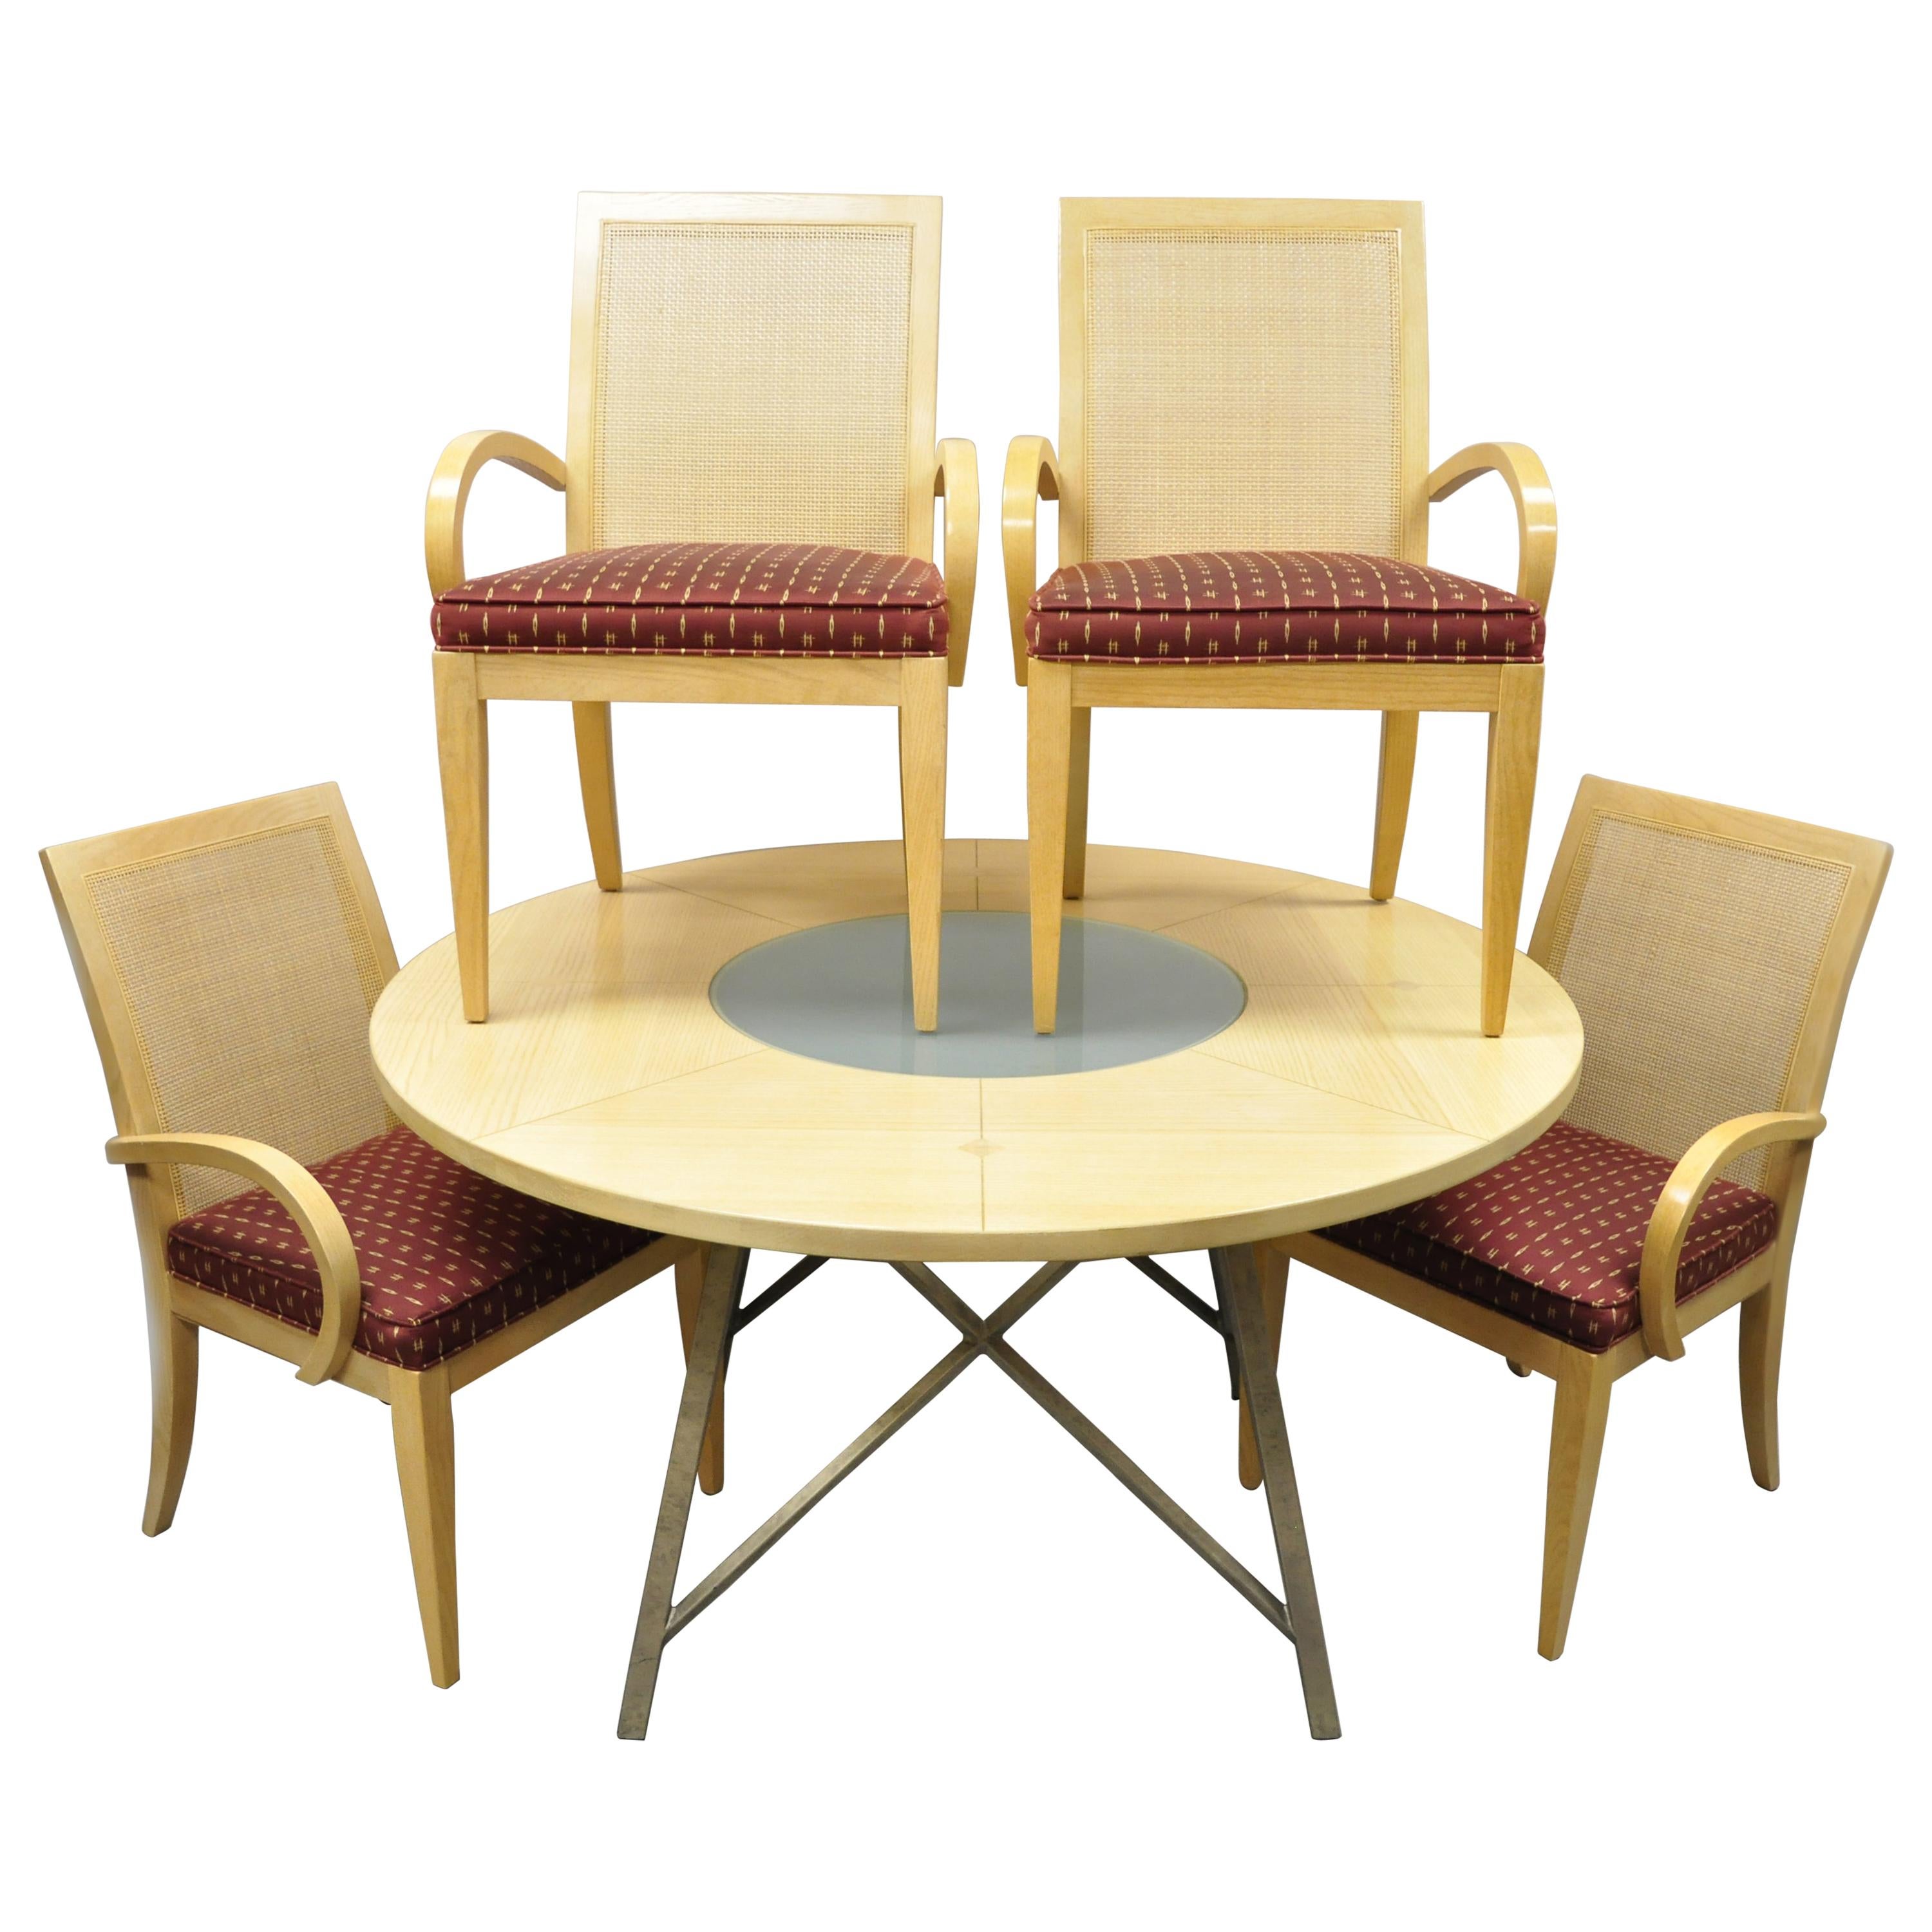 Drexel Heritage Studio - Ensemble de salle à manger moderne contemporain en bois blond - 4 chaises